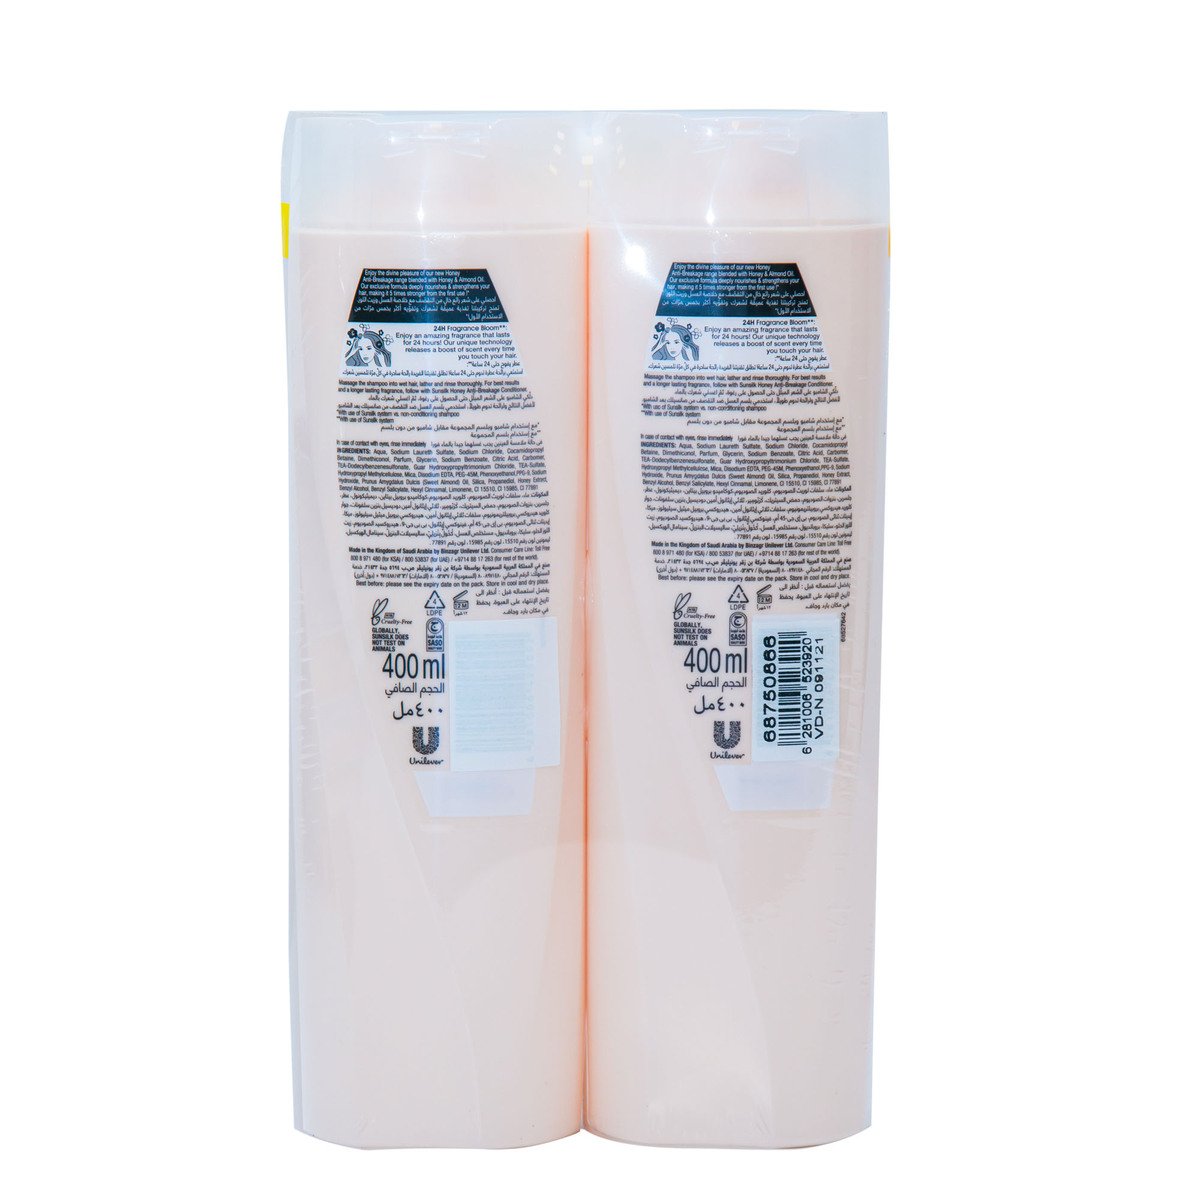 Sunsilk Honey Anti-Breakage Shampoo 2 x 400 ml